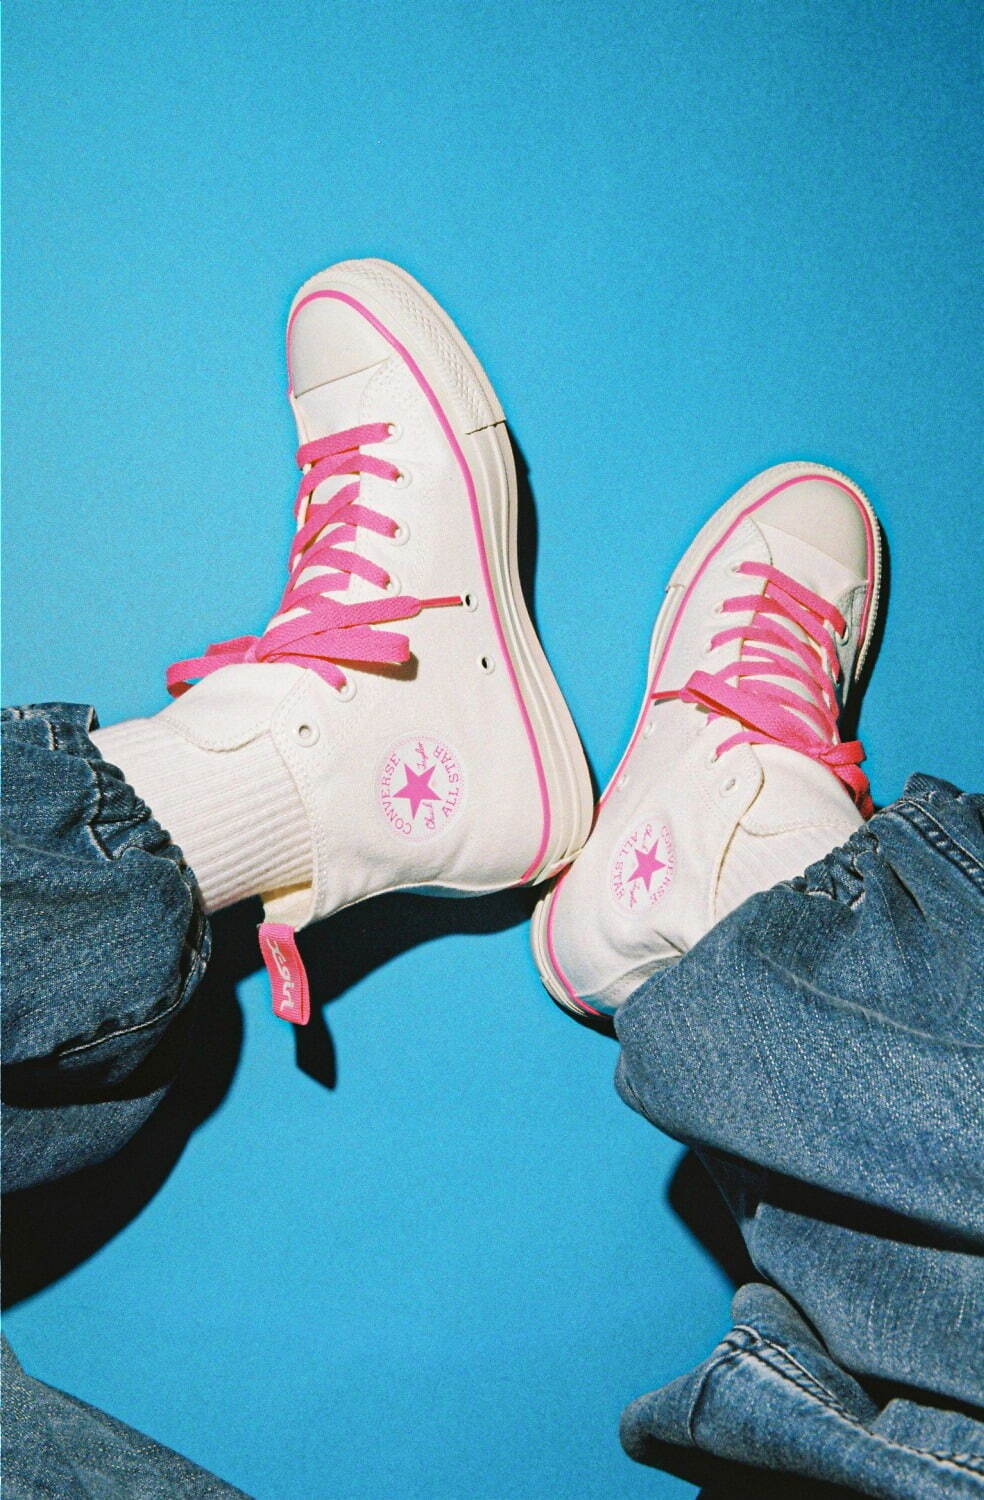 X-girl×コンバースのスニーカー、オールブラックのブーツ風＆ピンクが